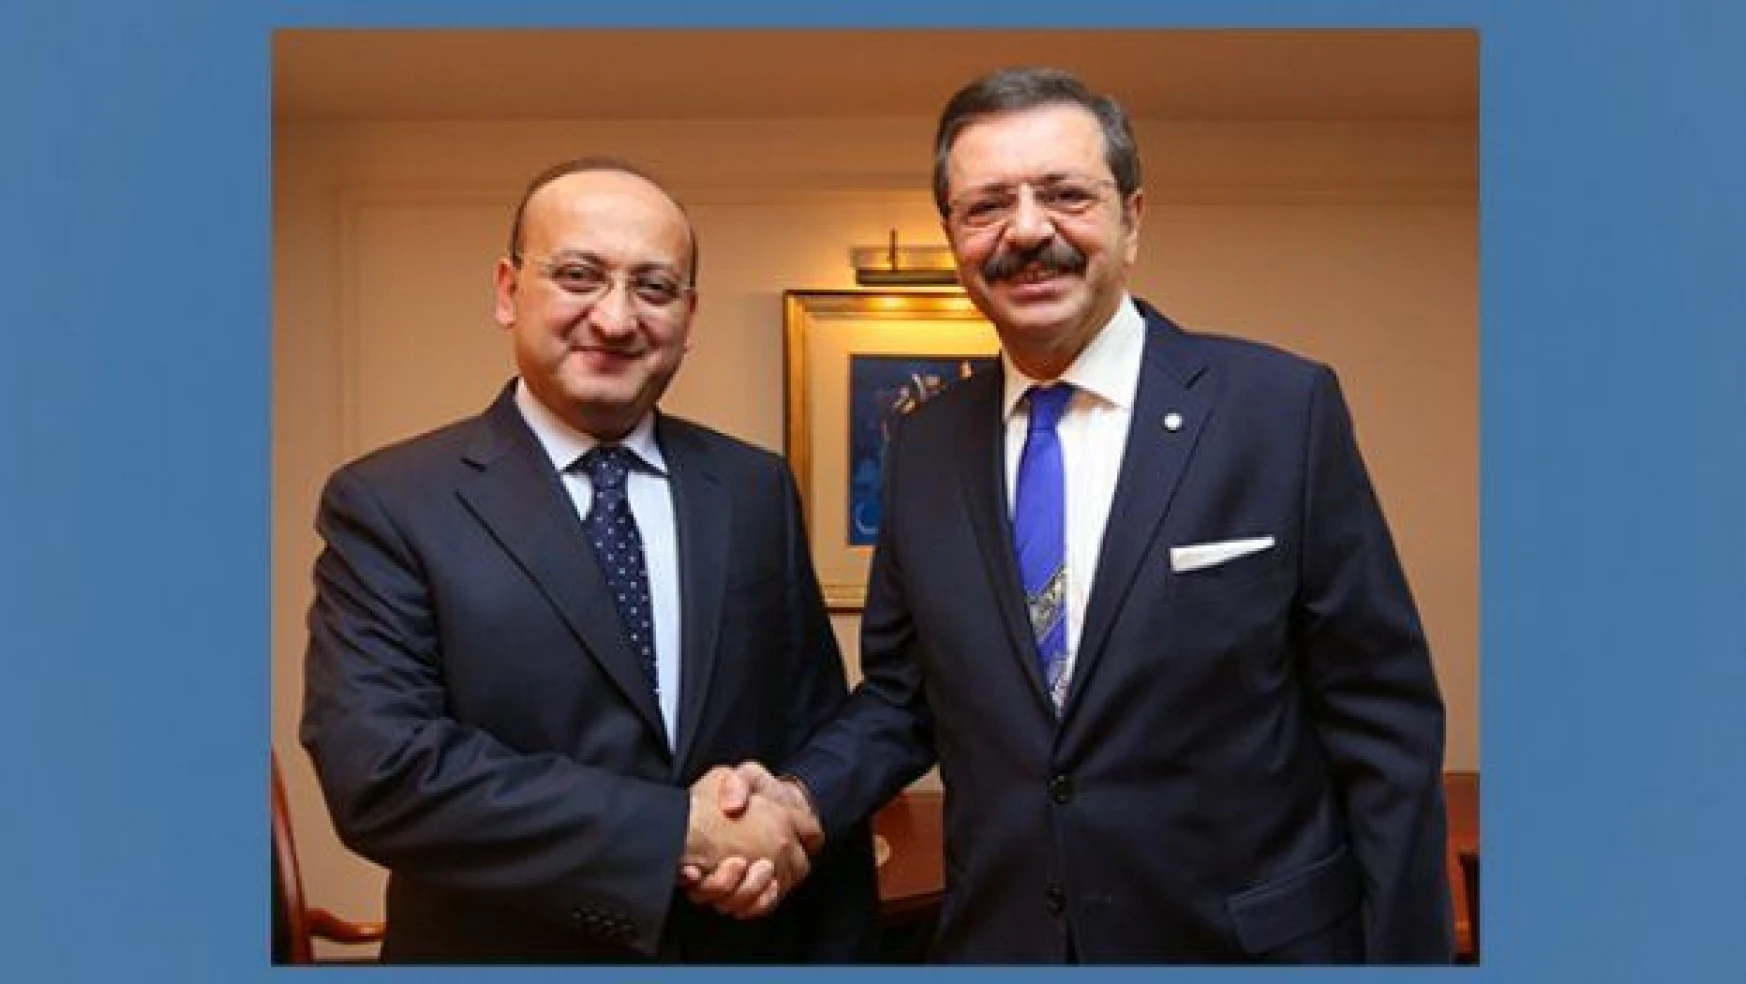  Hisarcıklıoğlu'ndan Başbakan Yardımcısı Akdoğan'a ziyaret